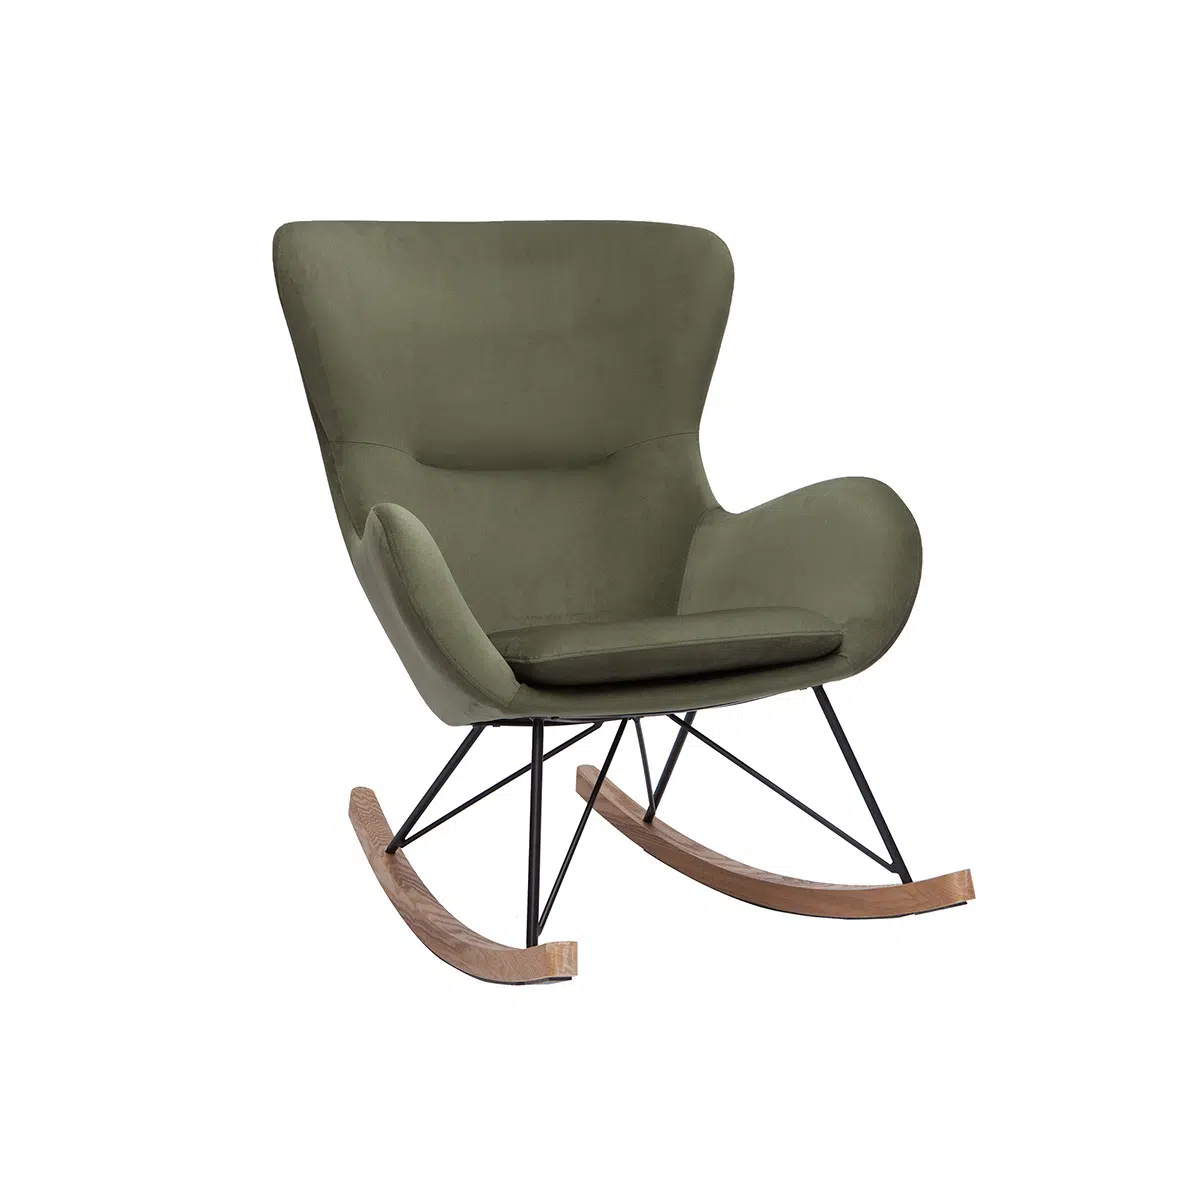 Rocking chair design en tissu effet velours kaki